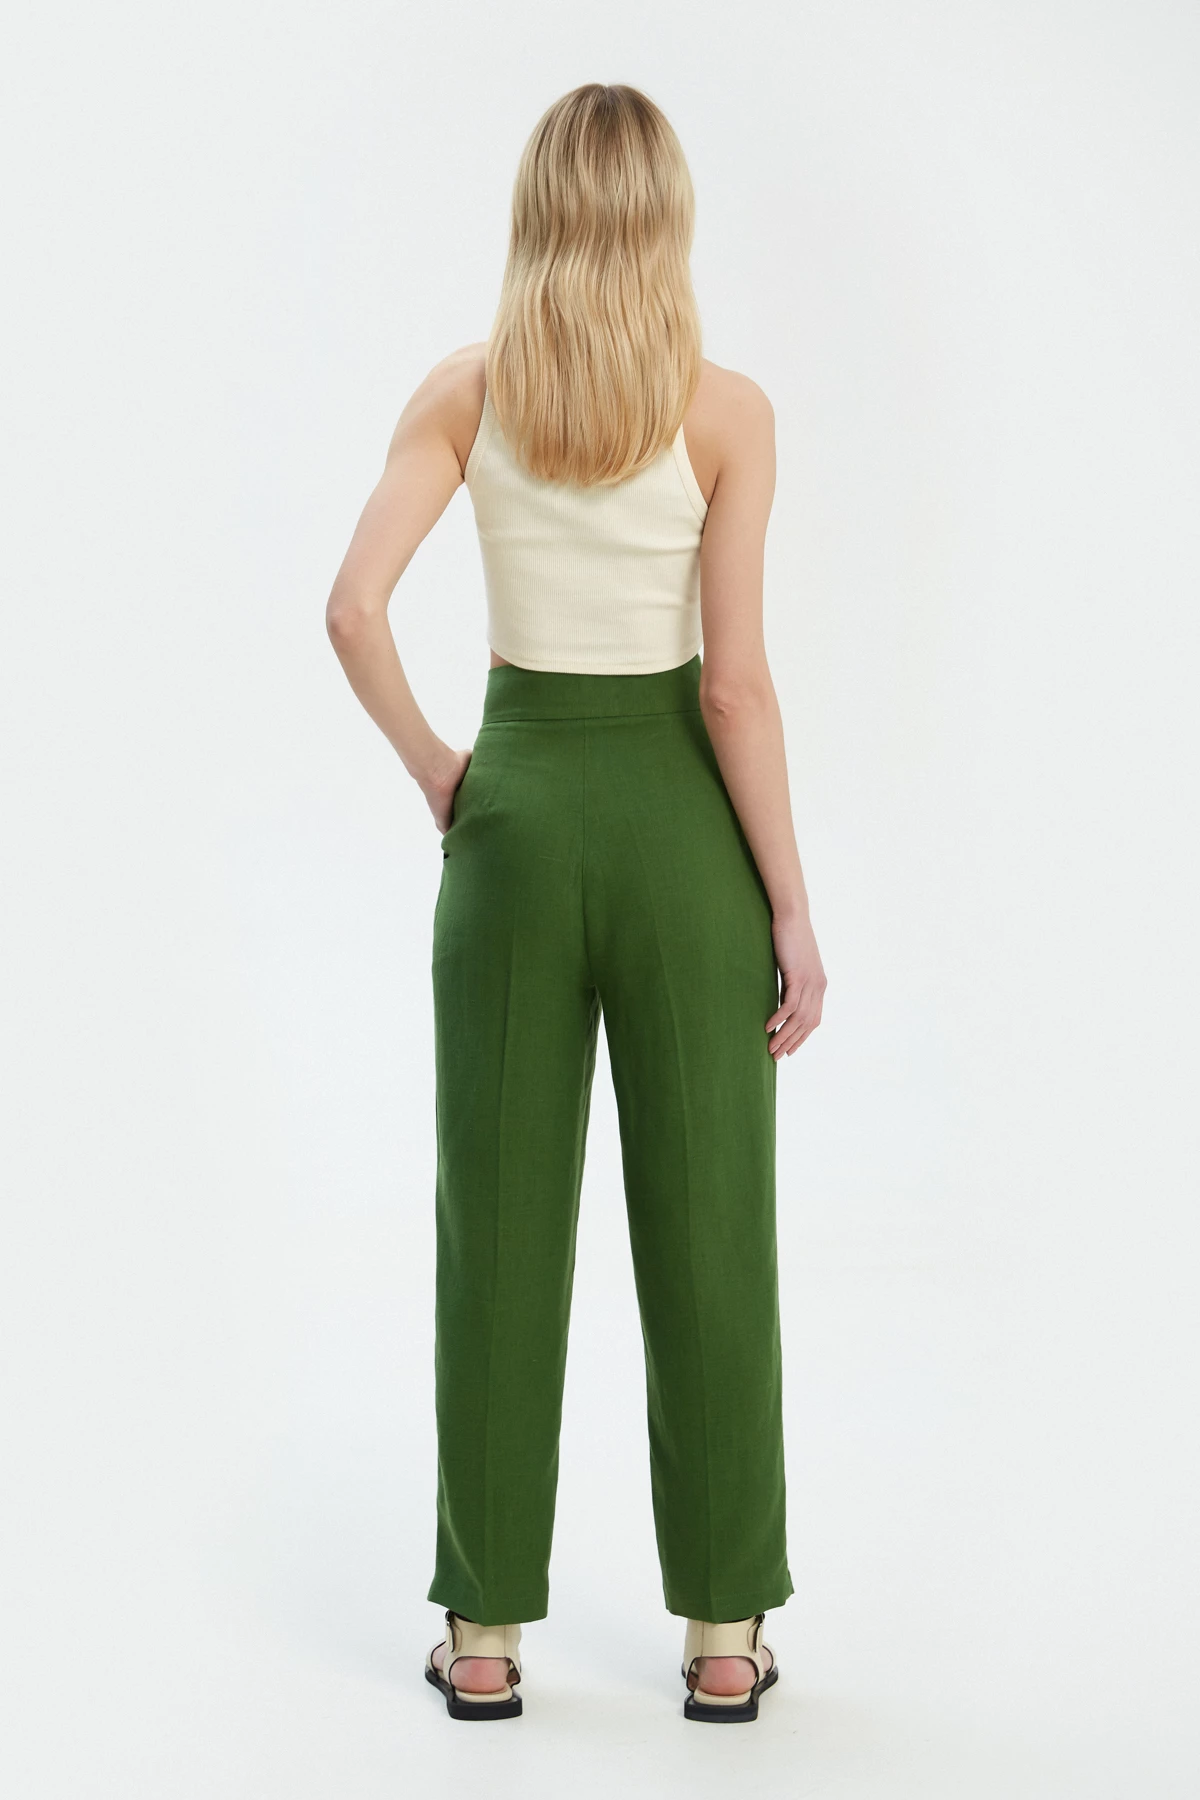 Зелені прямі вкорочені штани зі 100% льону, фото 2